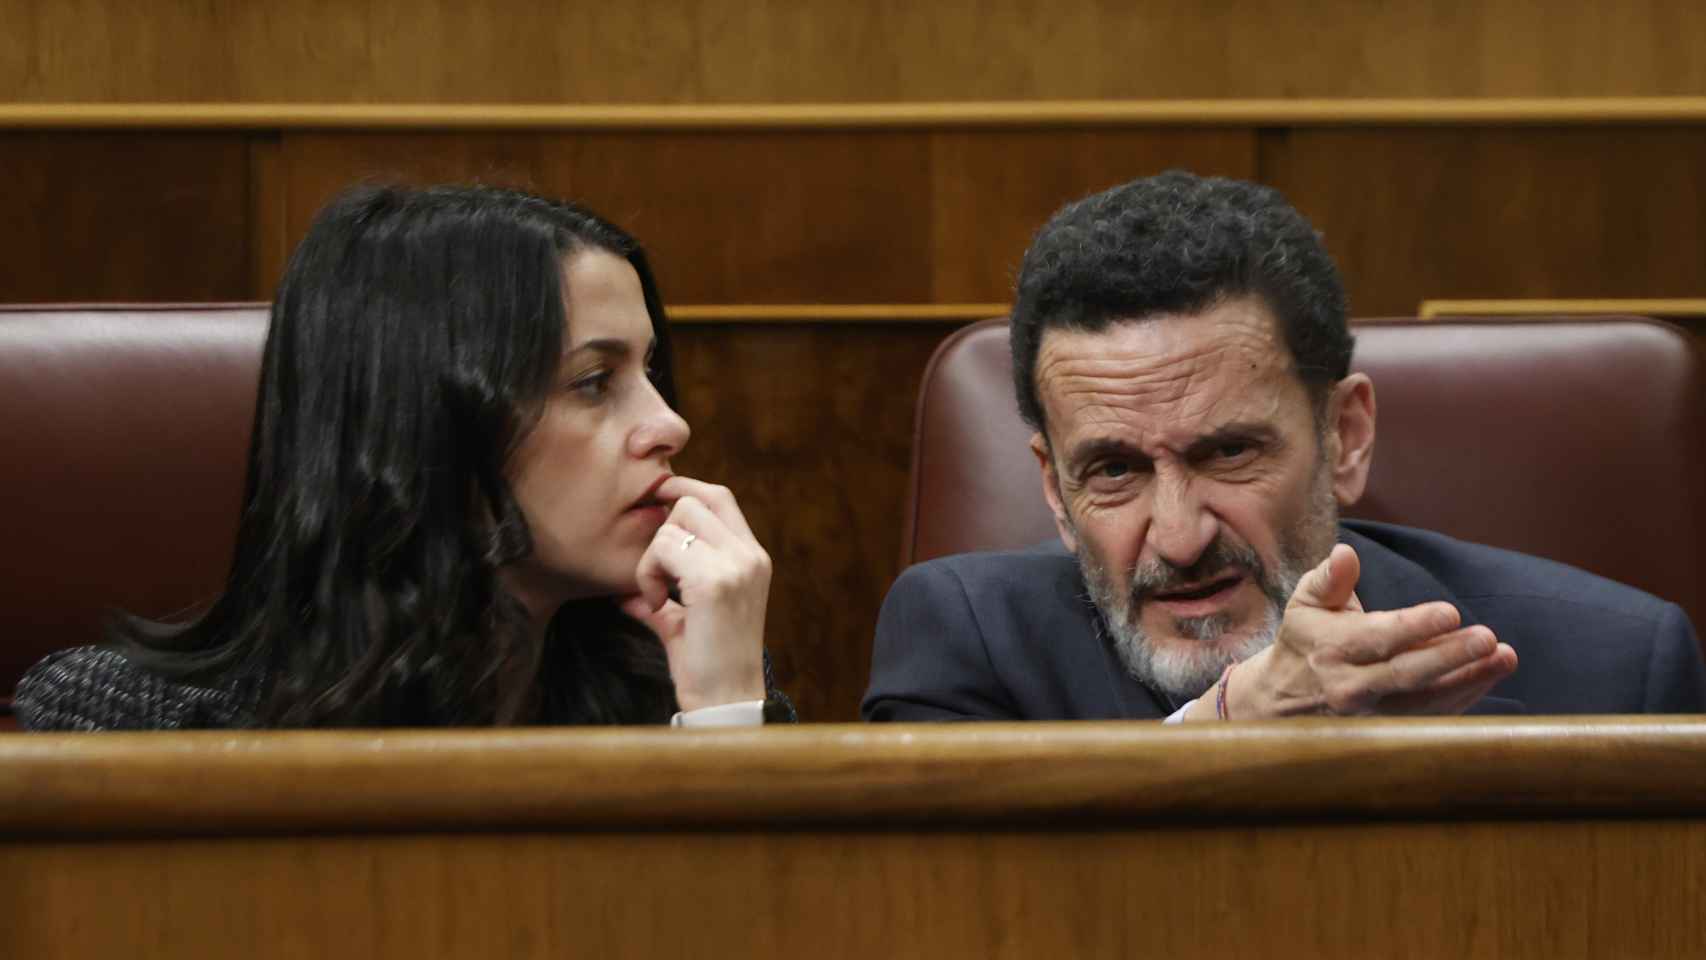 Inés Arrimadas y Edmundo Bal en el Congreso de los Diputados.